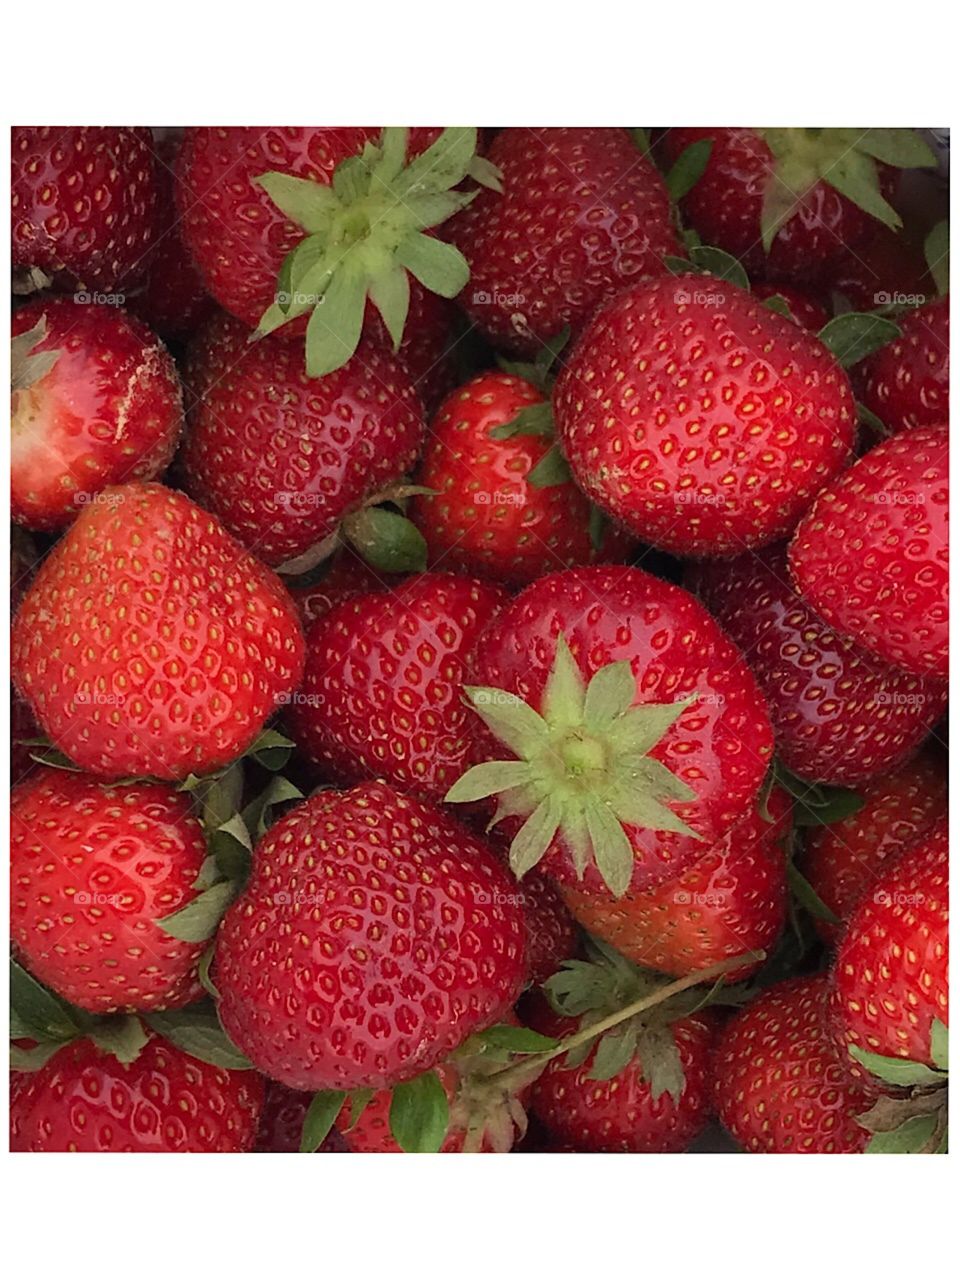 Fresh strawberries 